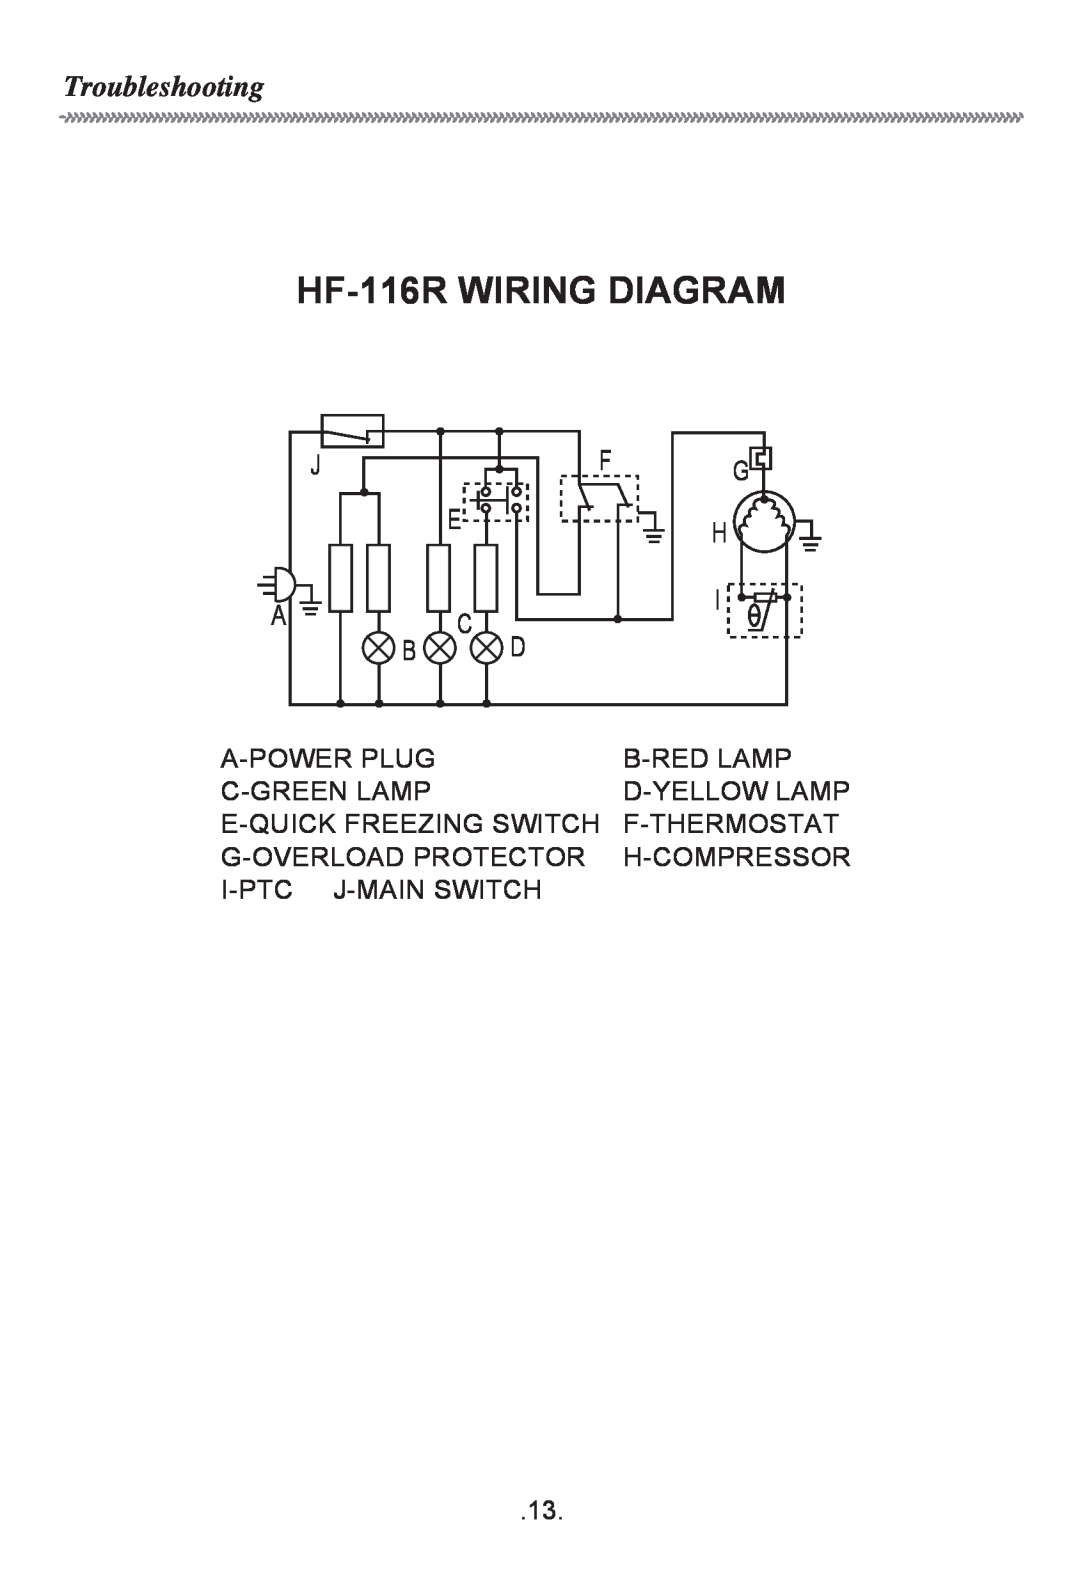 Haier owner manual Troubleshooting, HF-116RWIRING DIAGRAM 